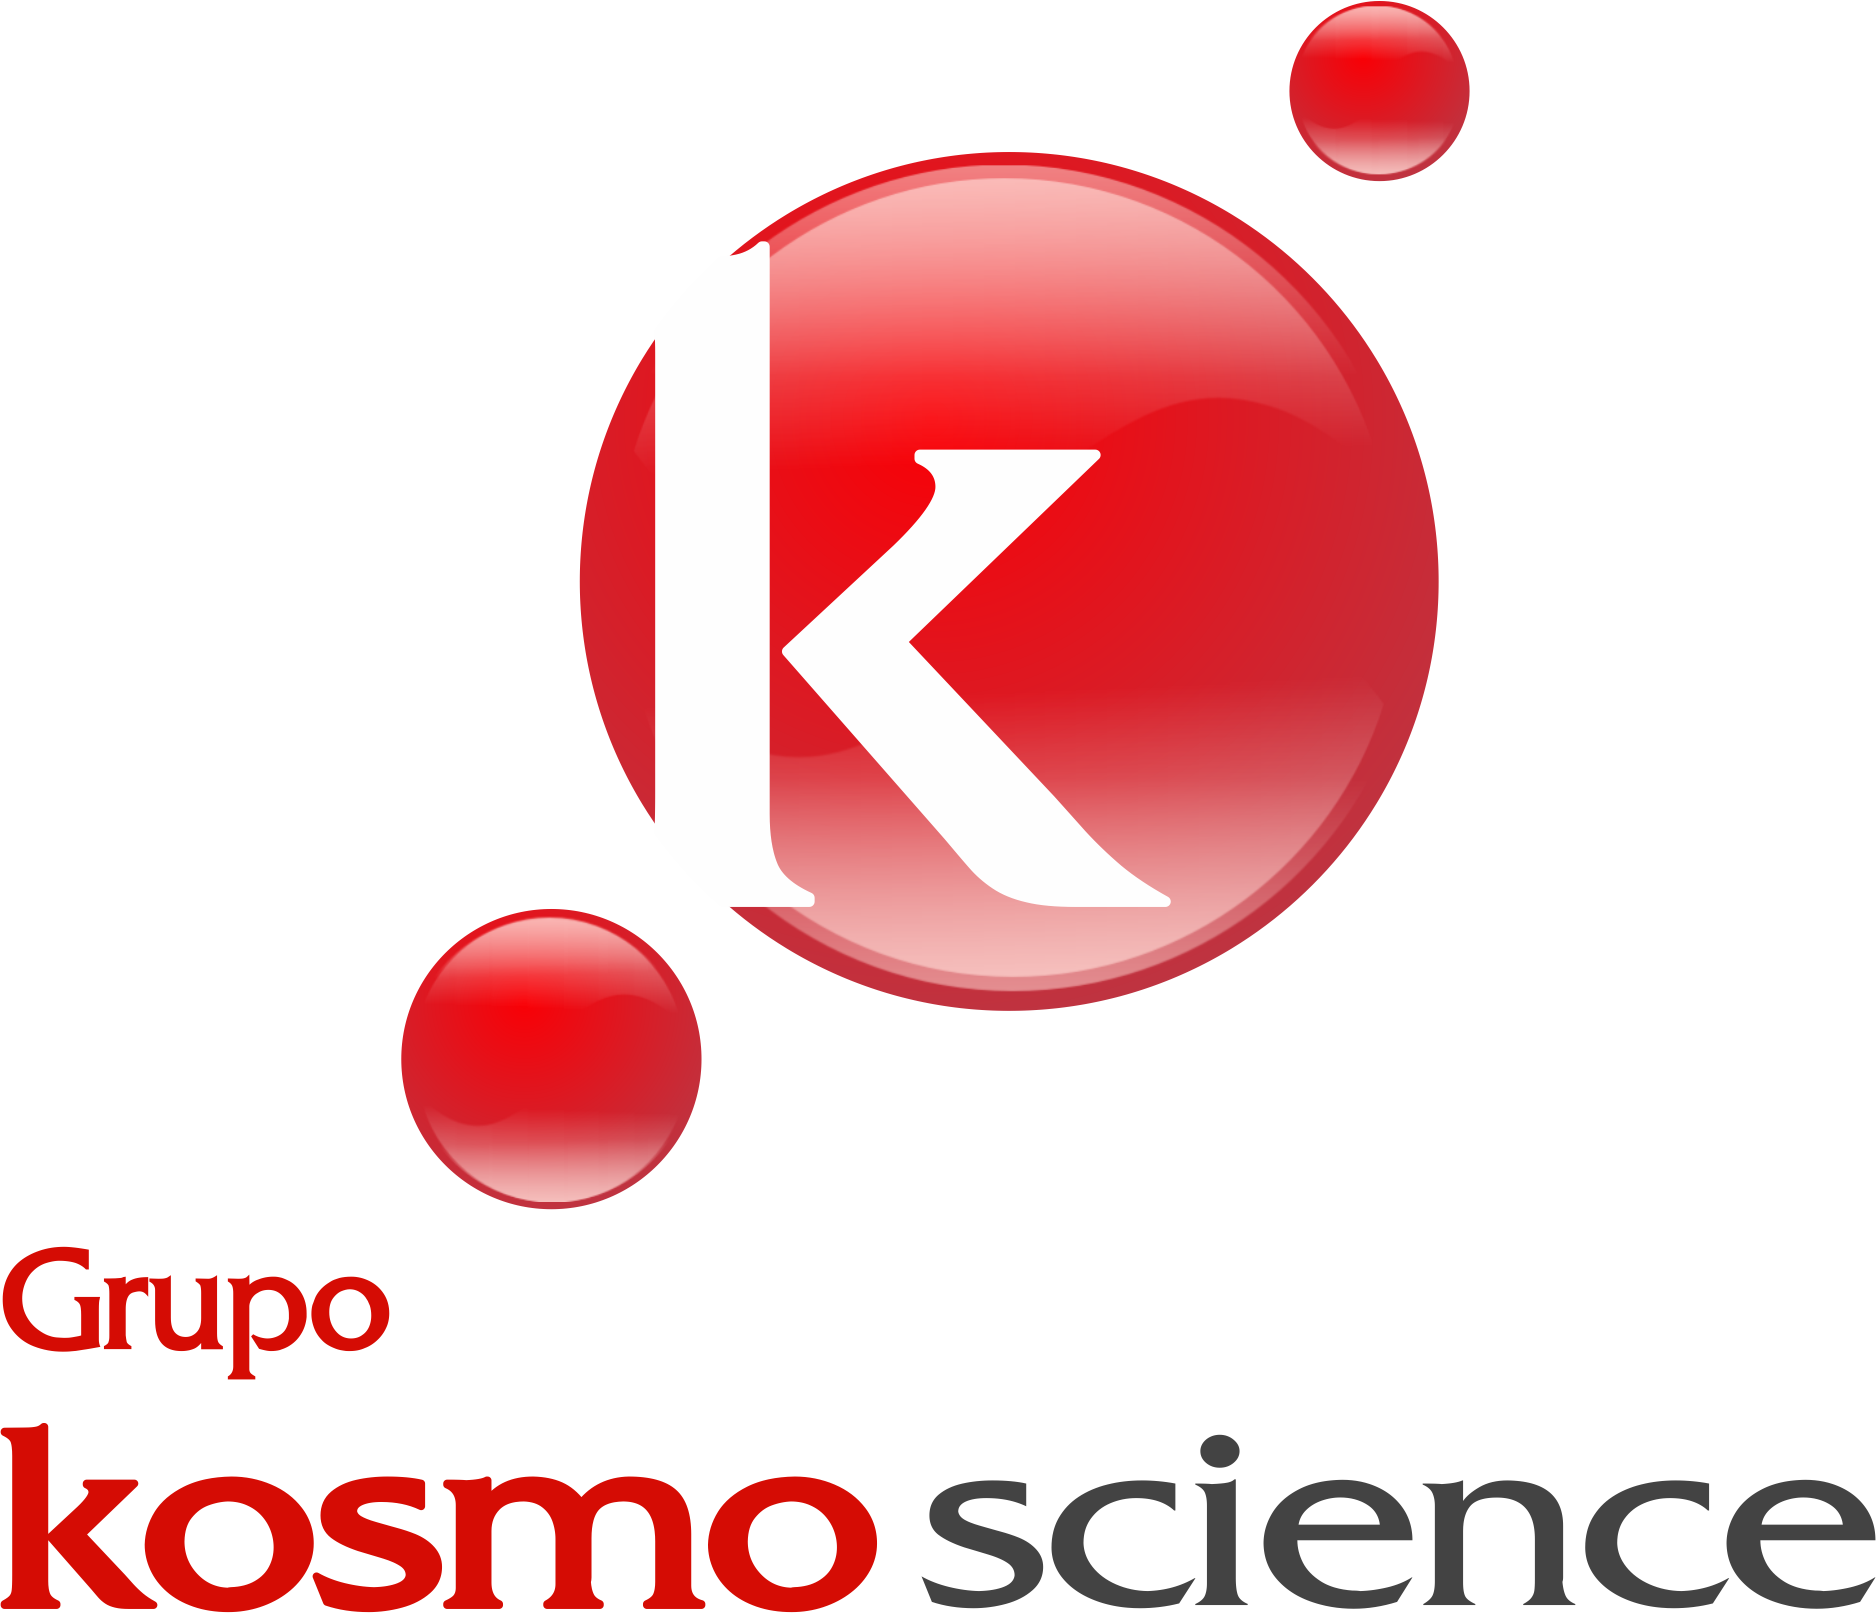 Grupo Kosmoscience